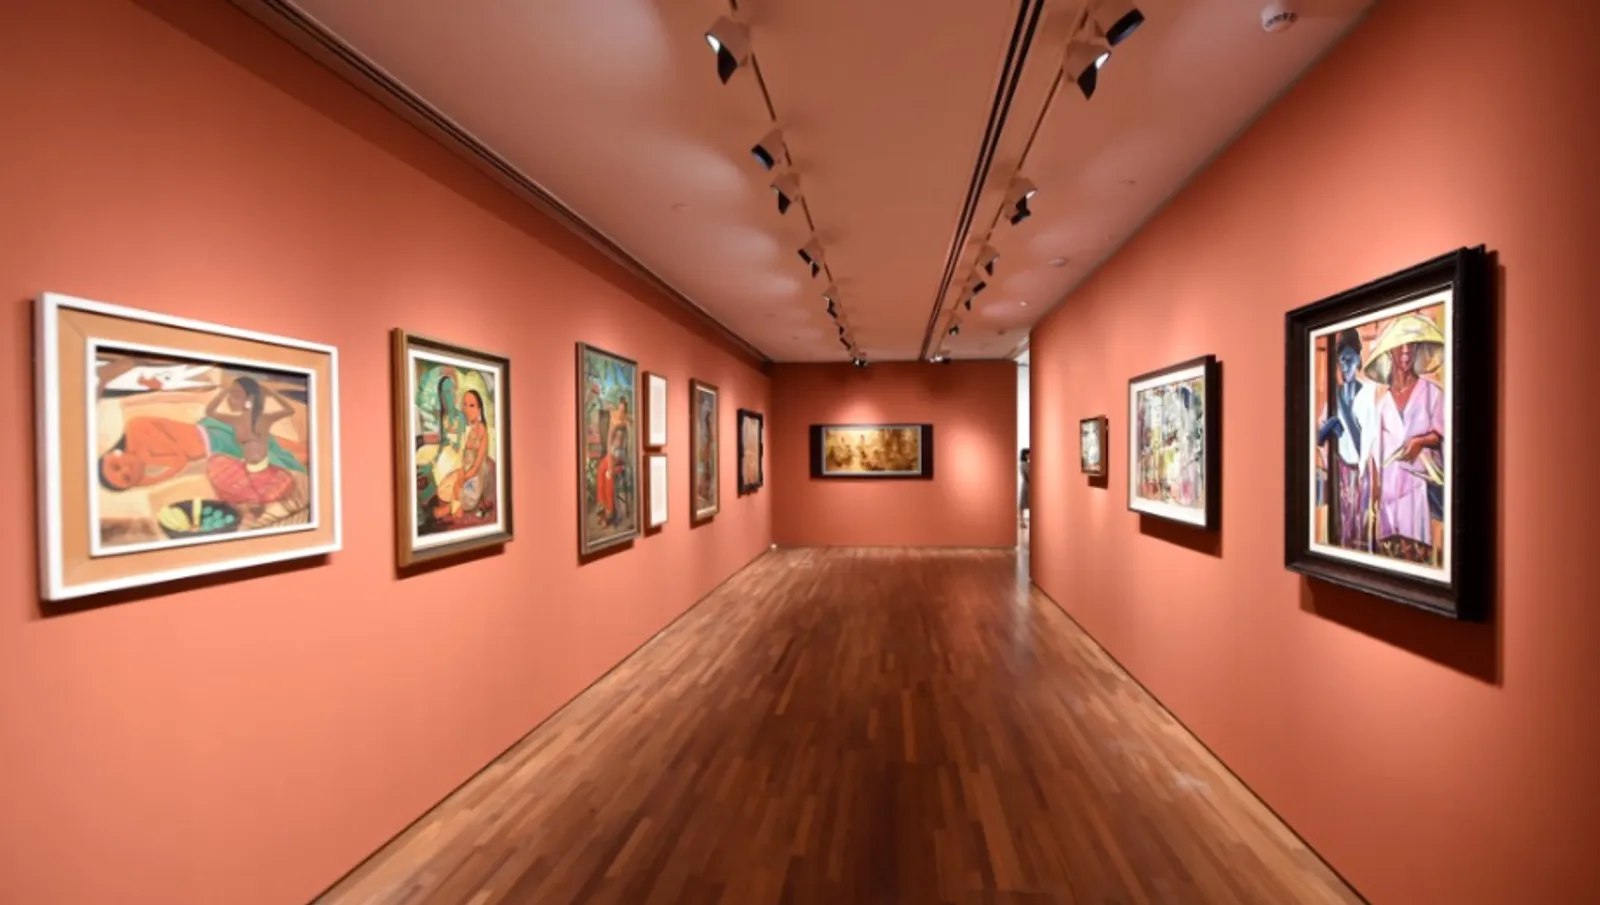 Jelajah Galeri Nasional Singapura, Pusat Seni Terbesar Asia Tenggara